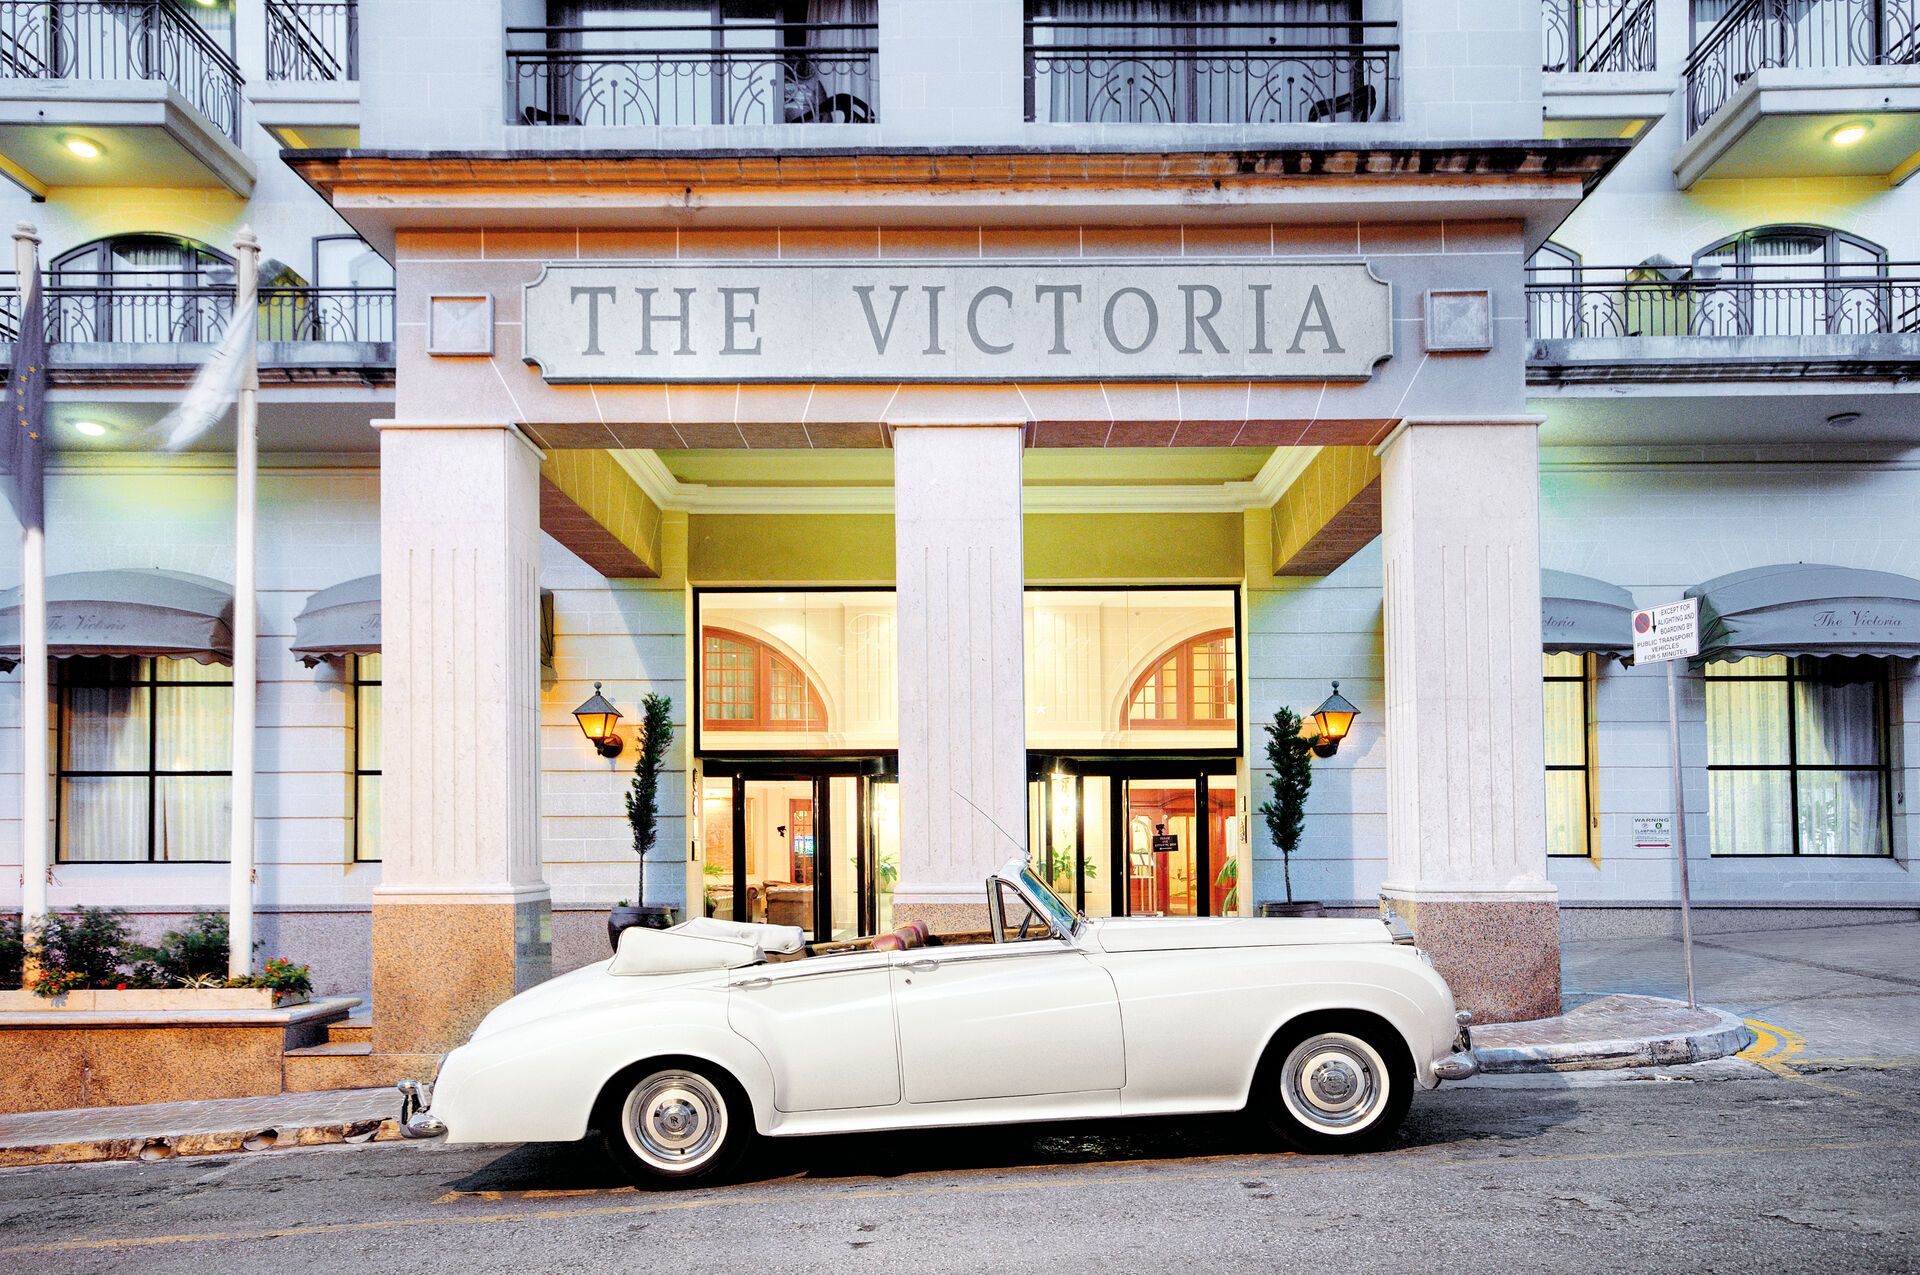 AX - The Victoria Hotel - 4*